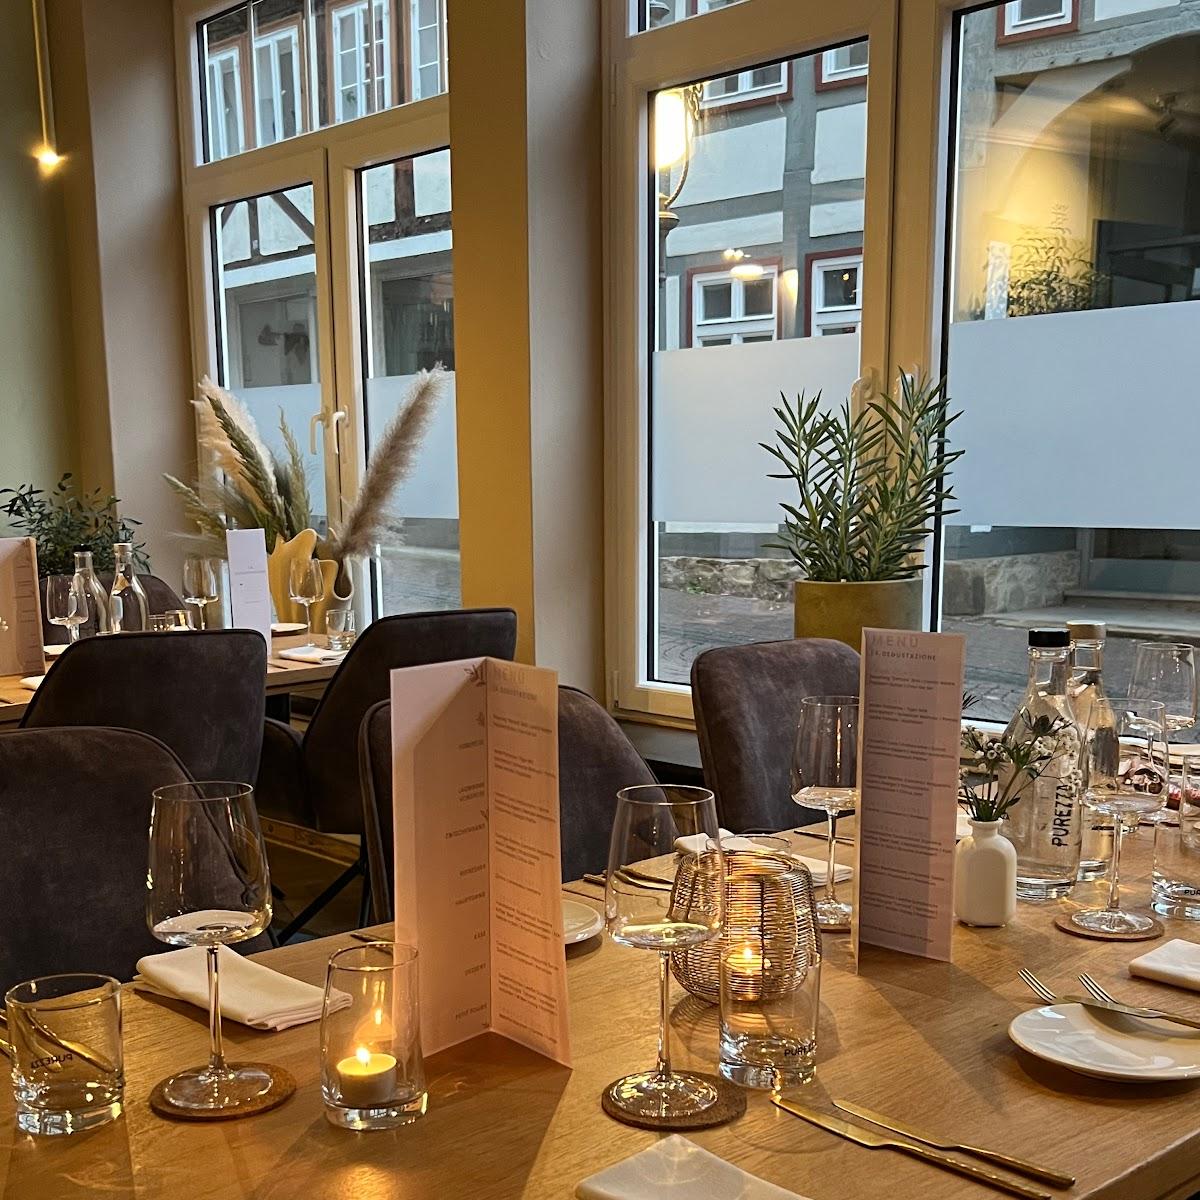 Restaurant "AUVIGU High Dining" in Bad Salzuflen